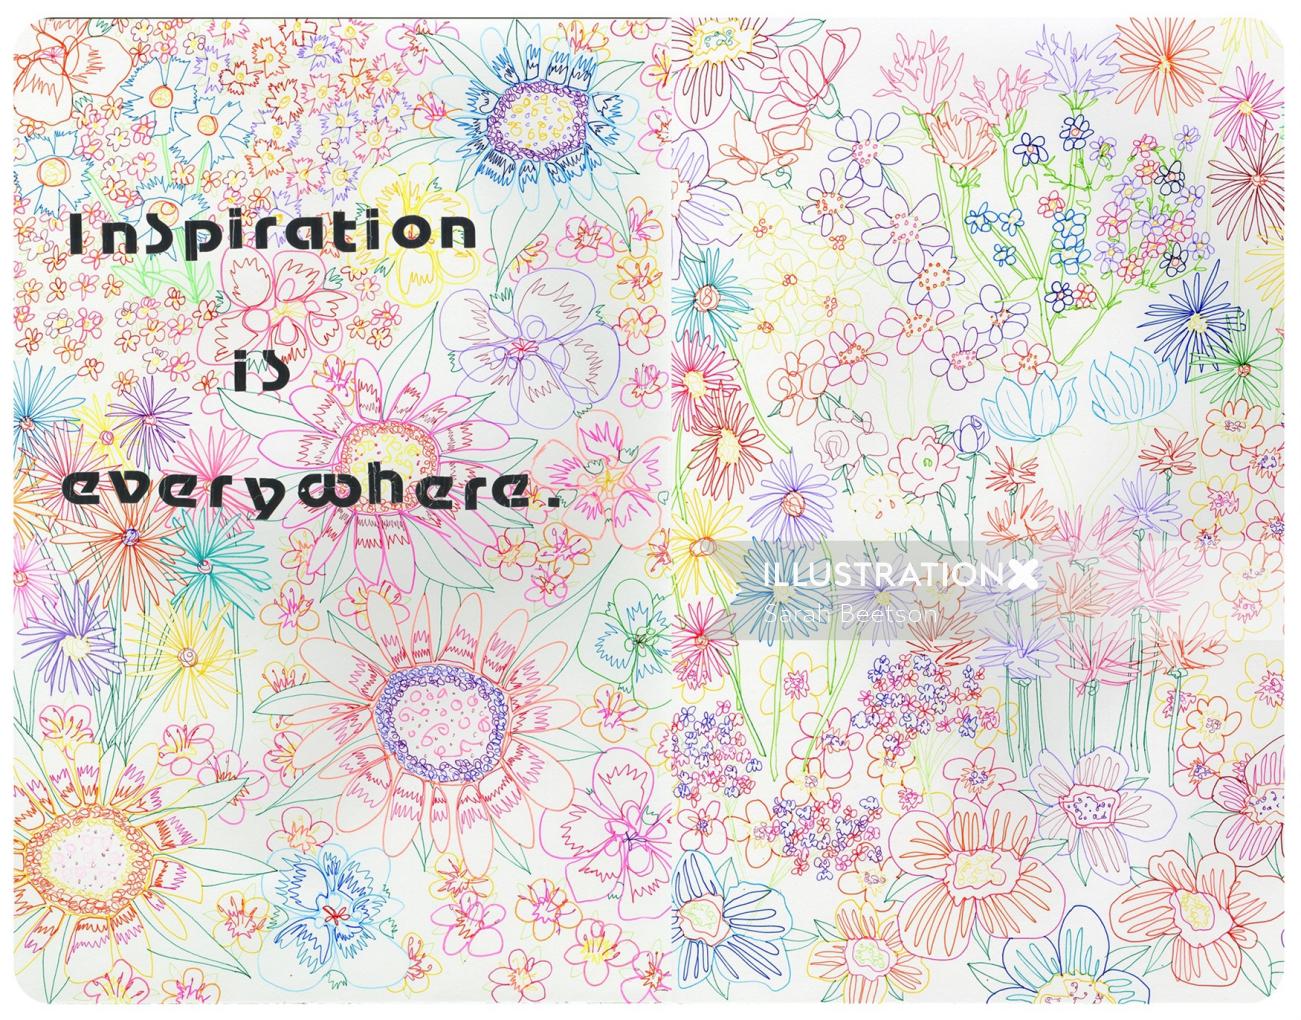 El concepto de inspiración está en todas partes Ilustración de Sarah Beetson